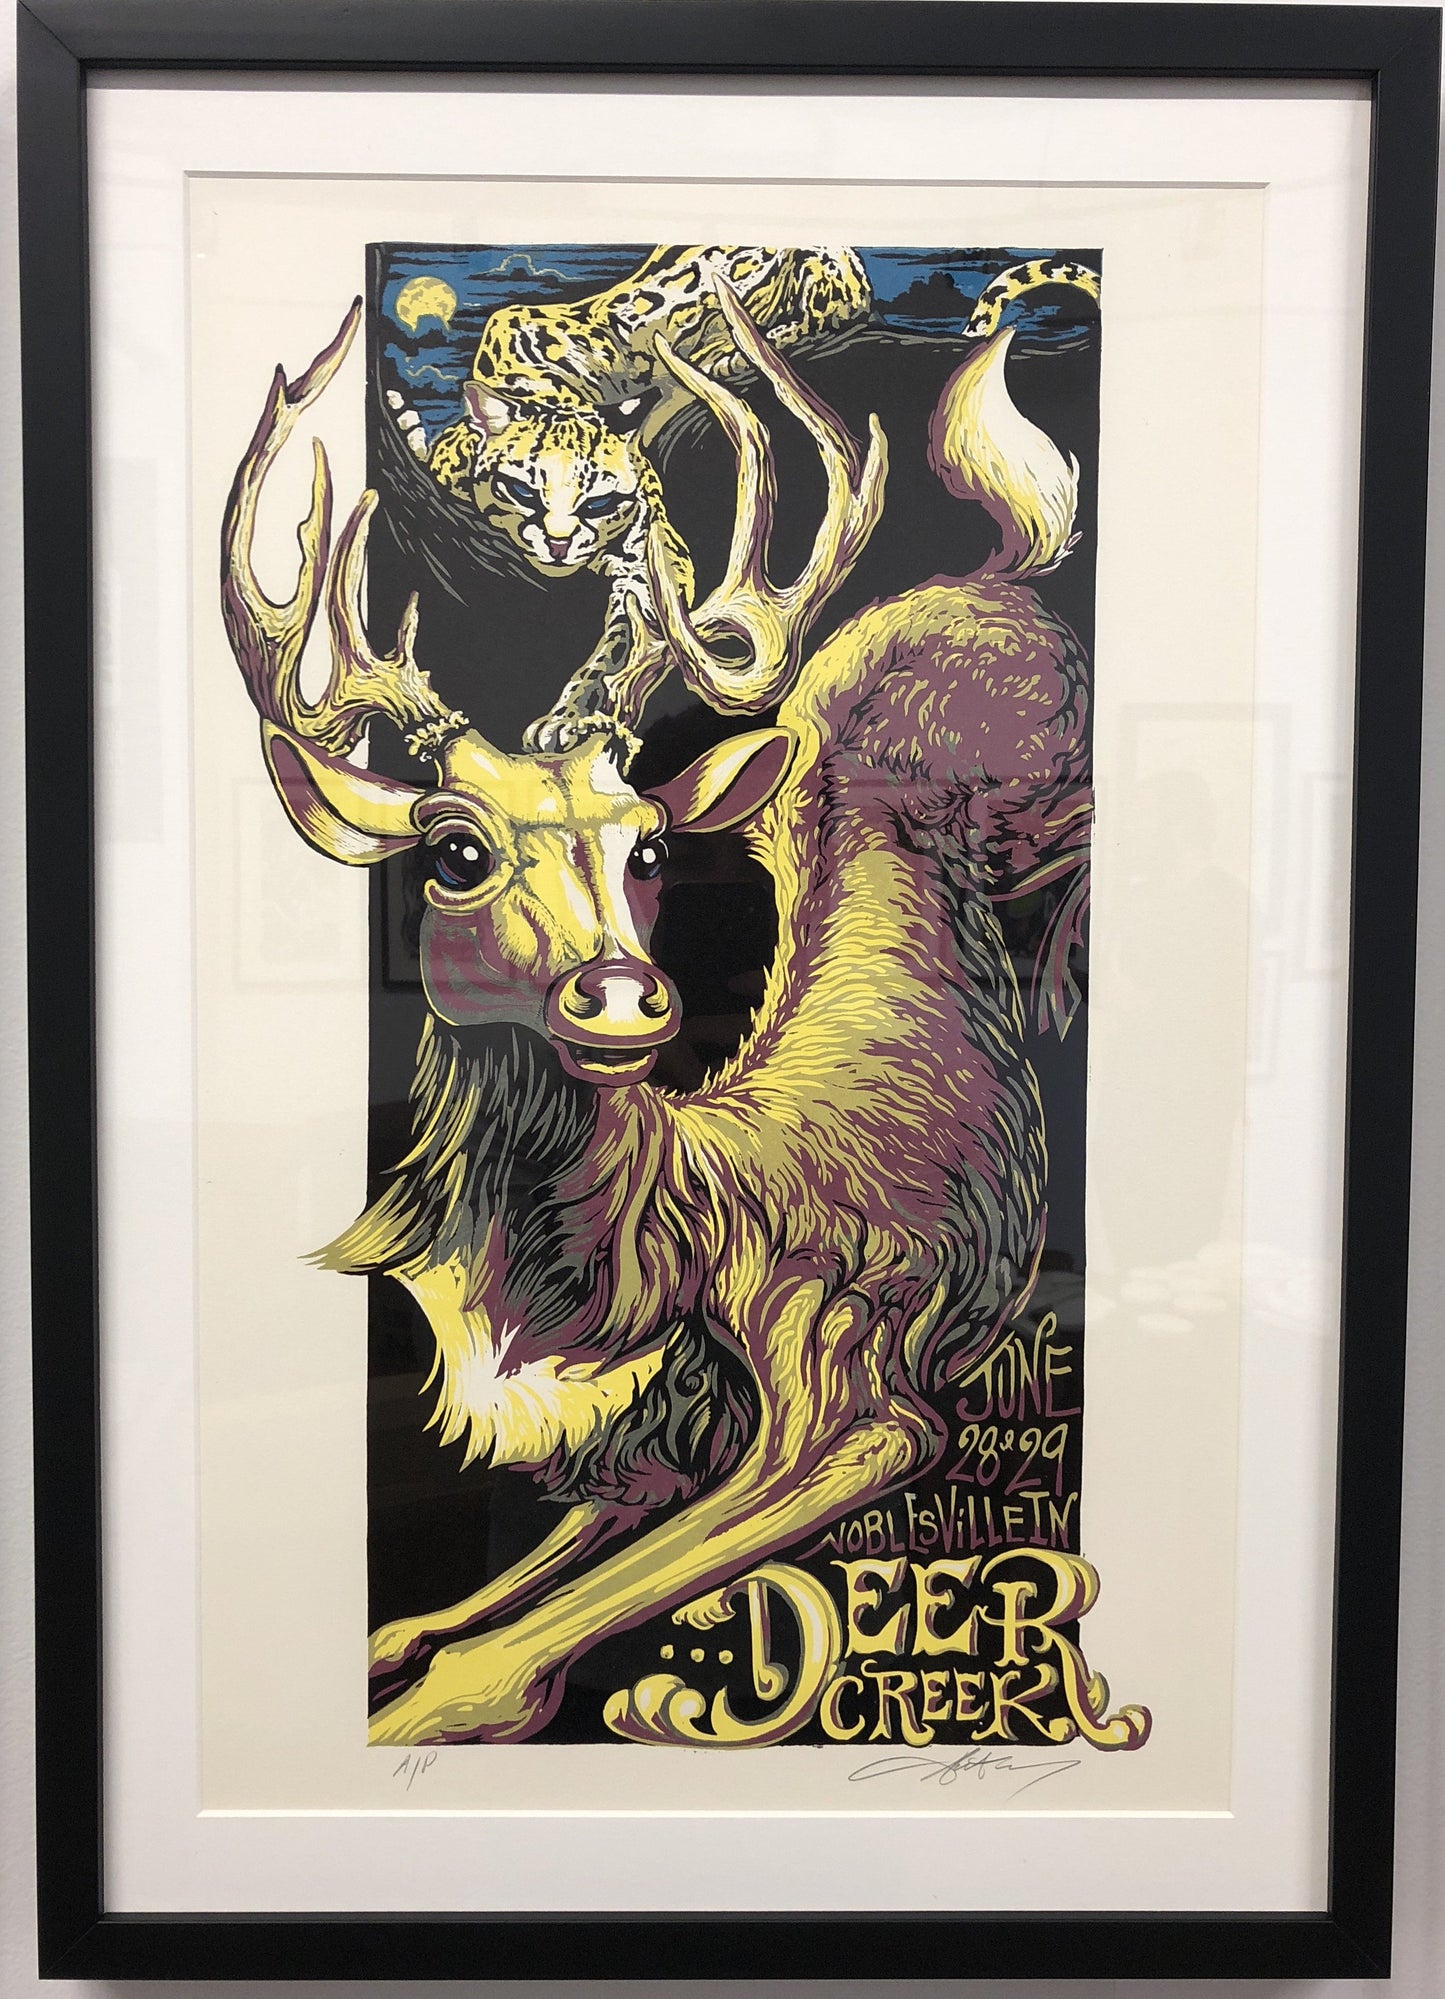 AJ Masthay "Deer Creek - Ocelot" - Framed